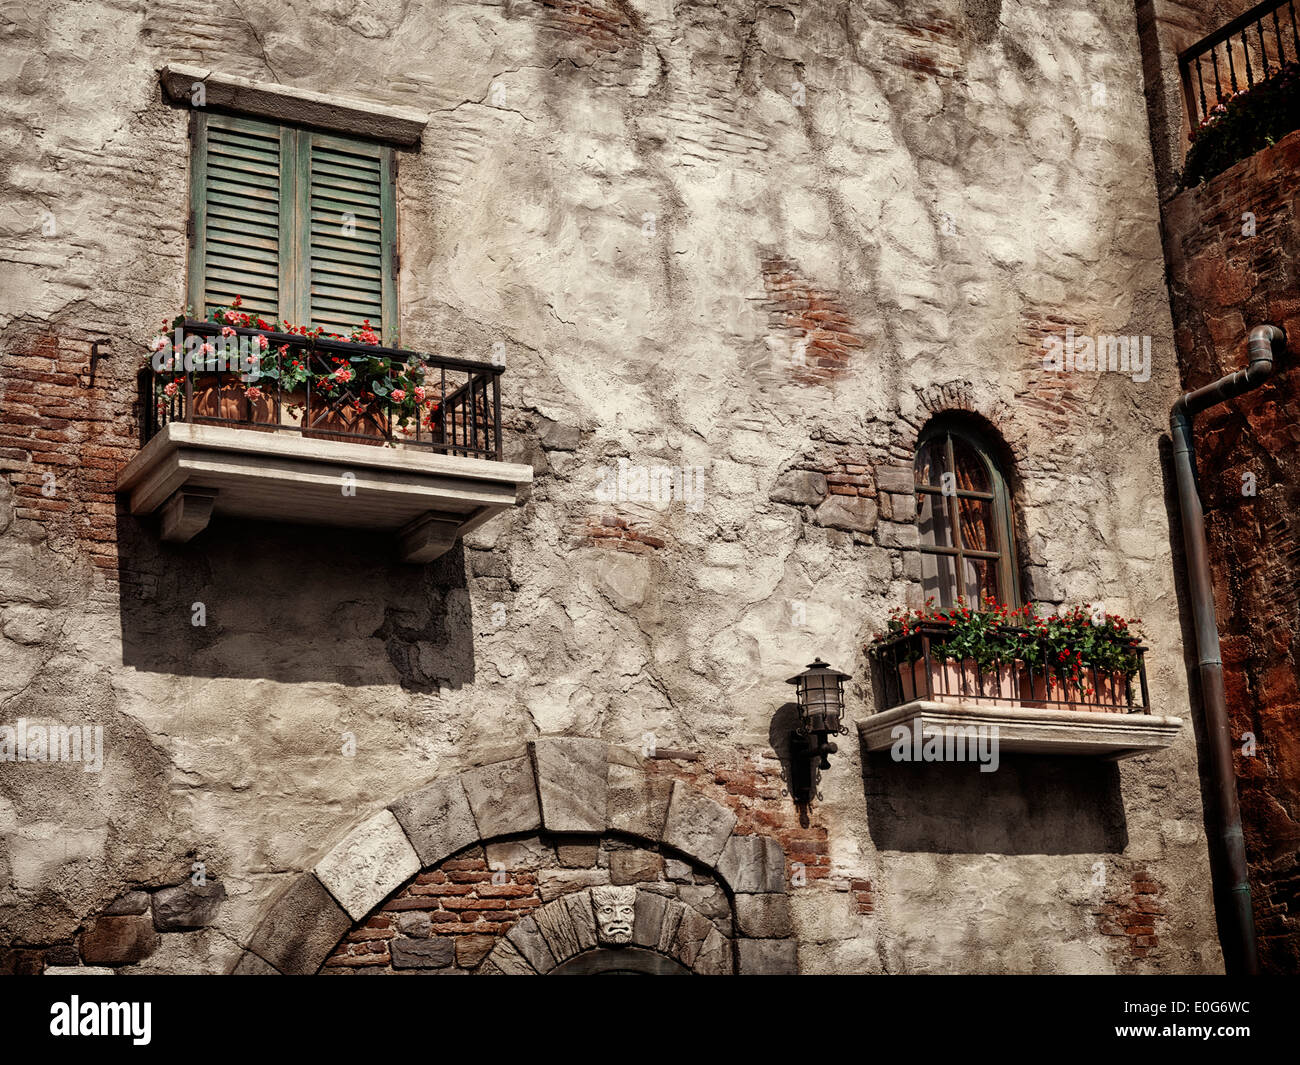 Vecchia casa rustica windows con fiori, antica architettura in stile veneziano e dai toni seppia Foto Stock